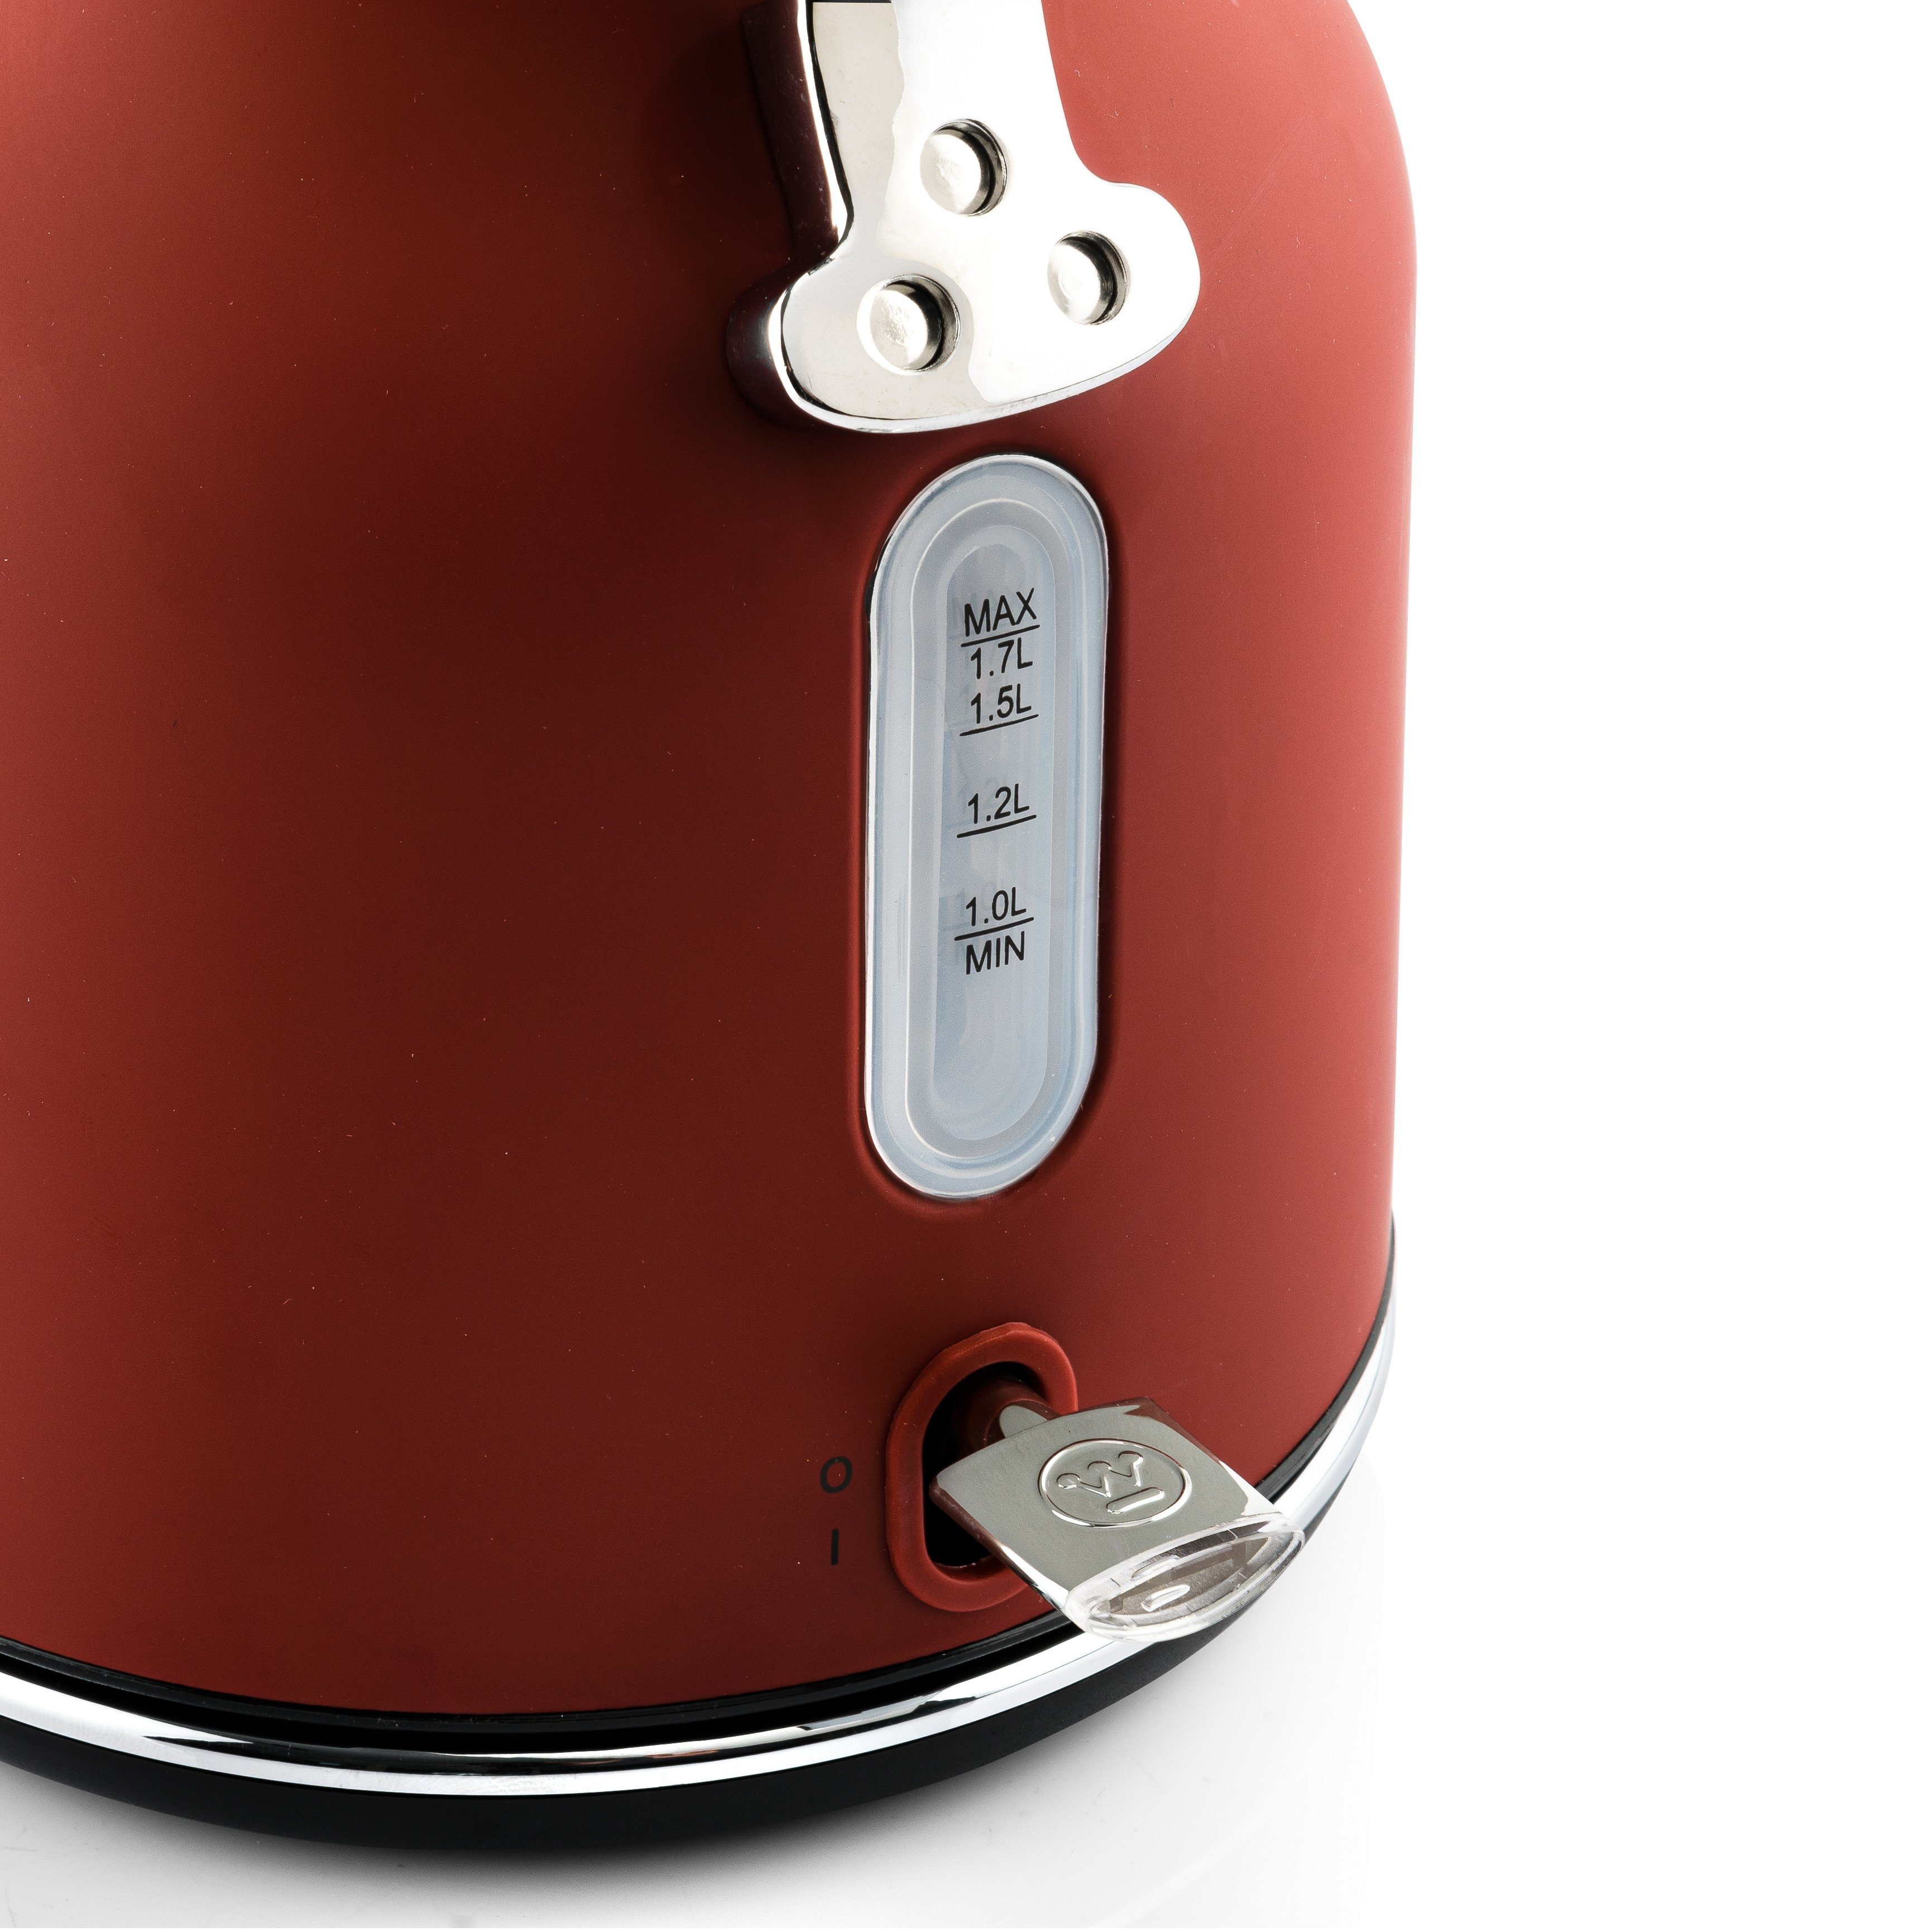 Westinghouse Toaster kurze 1750 4 1,5 Früstücksset, rot Wasserkocher Retro Volumen& Schlitze, Standmixer L 4 1,7 für W, Scheiben, L